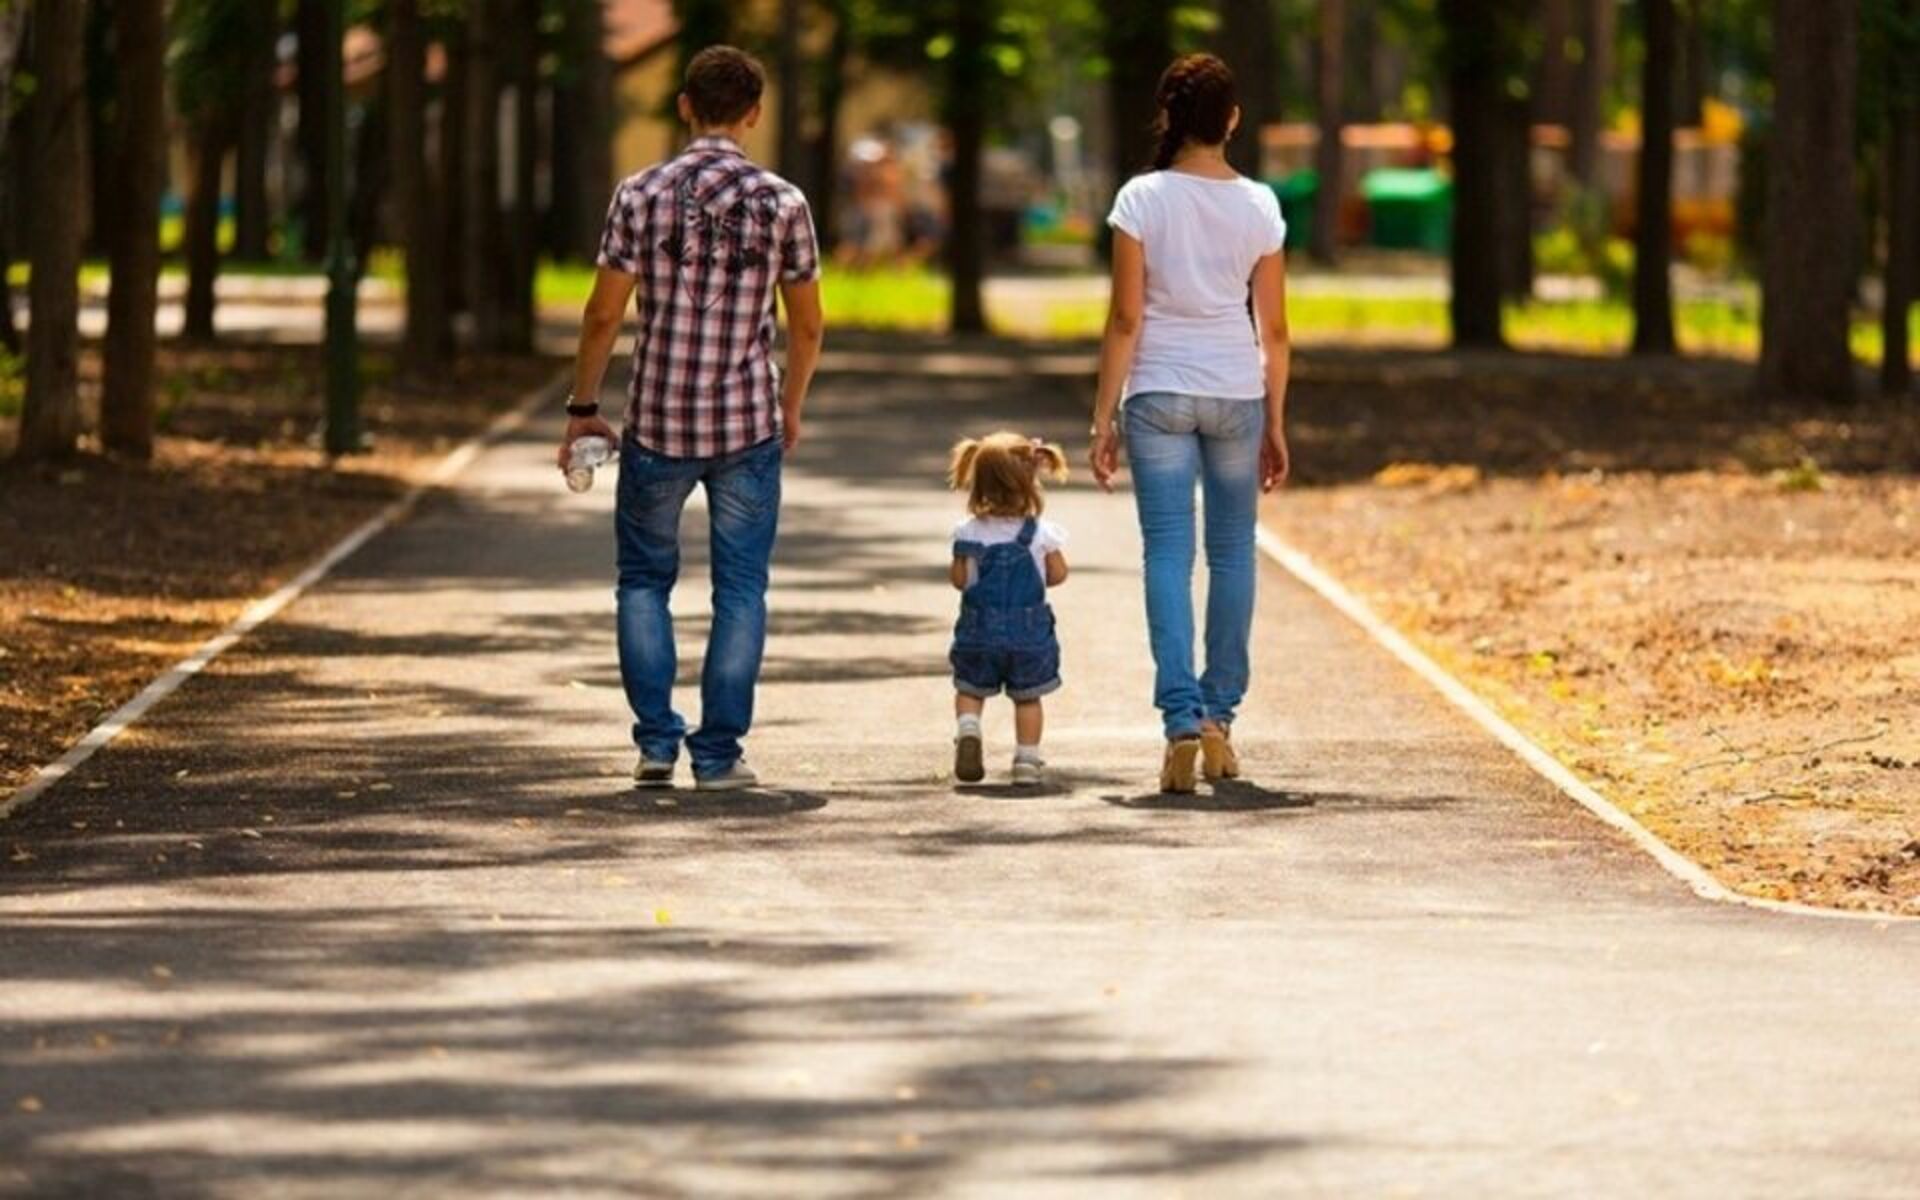 Мама гуляет в парке. Прогулка в парке. Прогулка в парке с детьми. Люди в парке с детьми. Семья на прогулке.